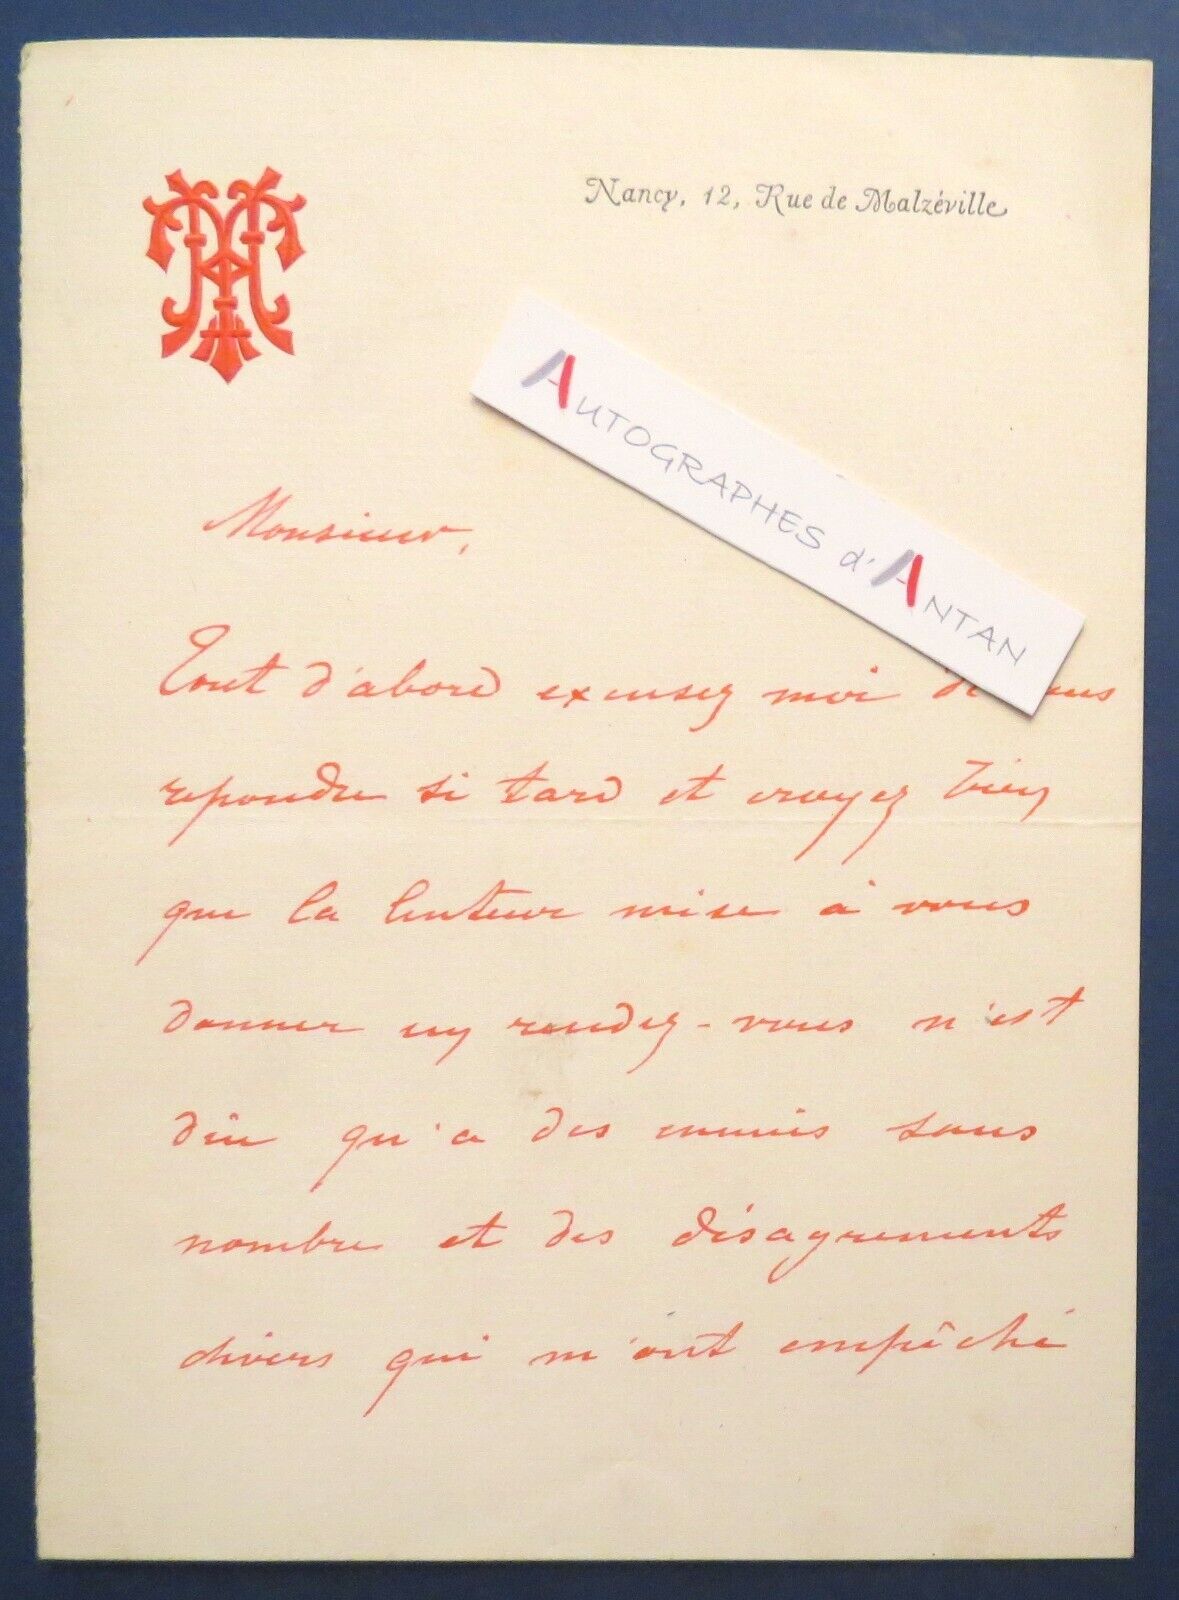 ● L.A.S 1890 Henri TEICHMANN - Nancy 12 rue de Malzéville - autograph letter